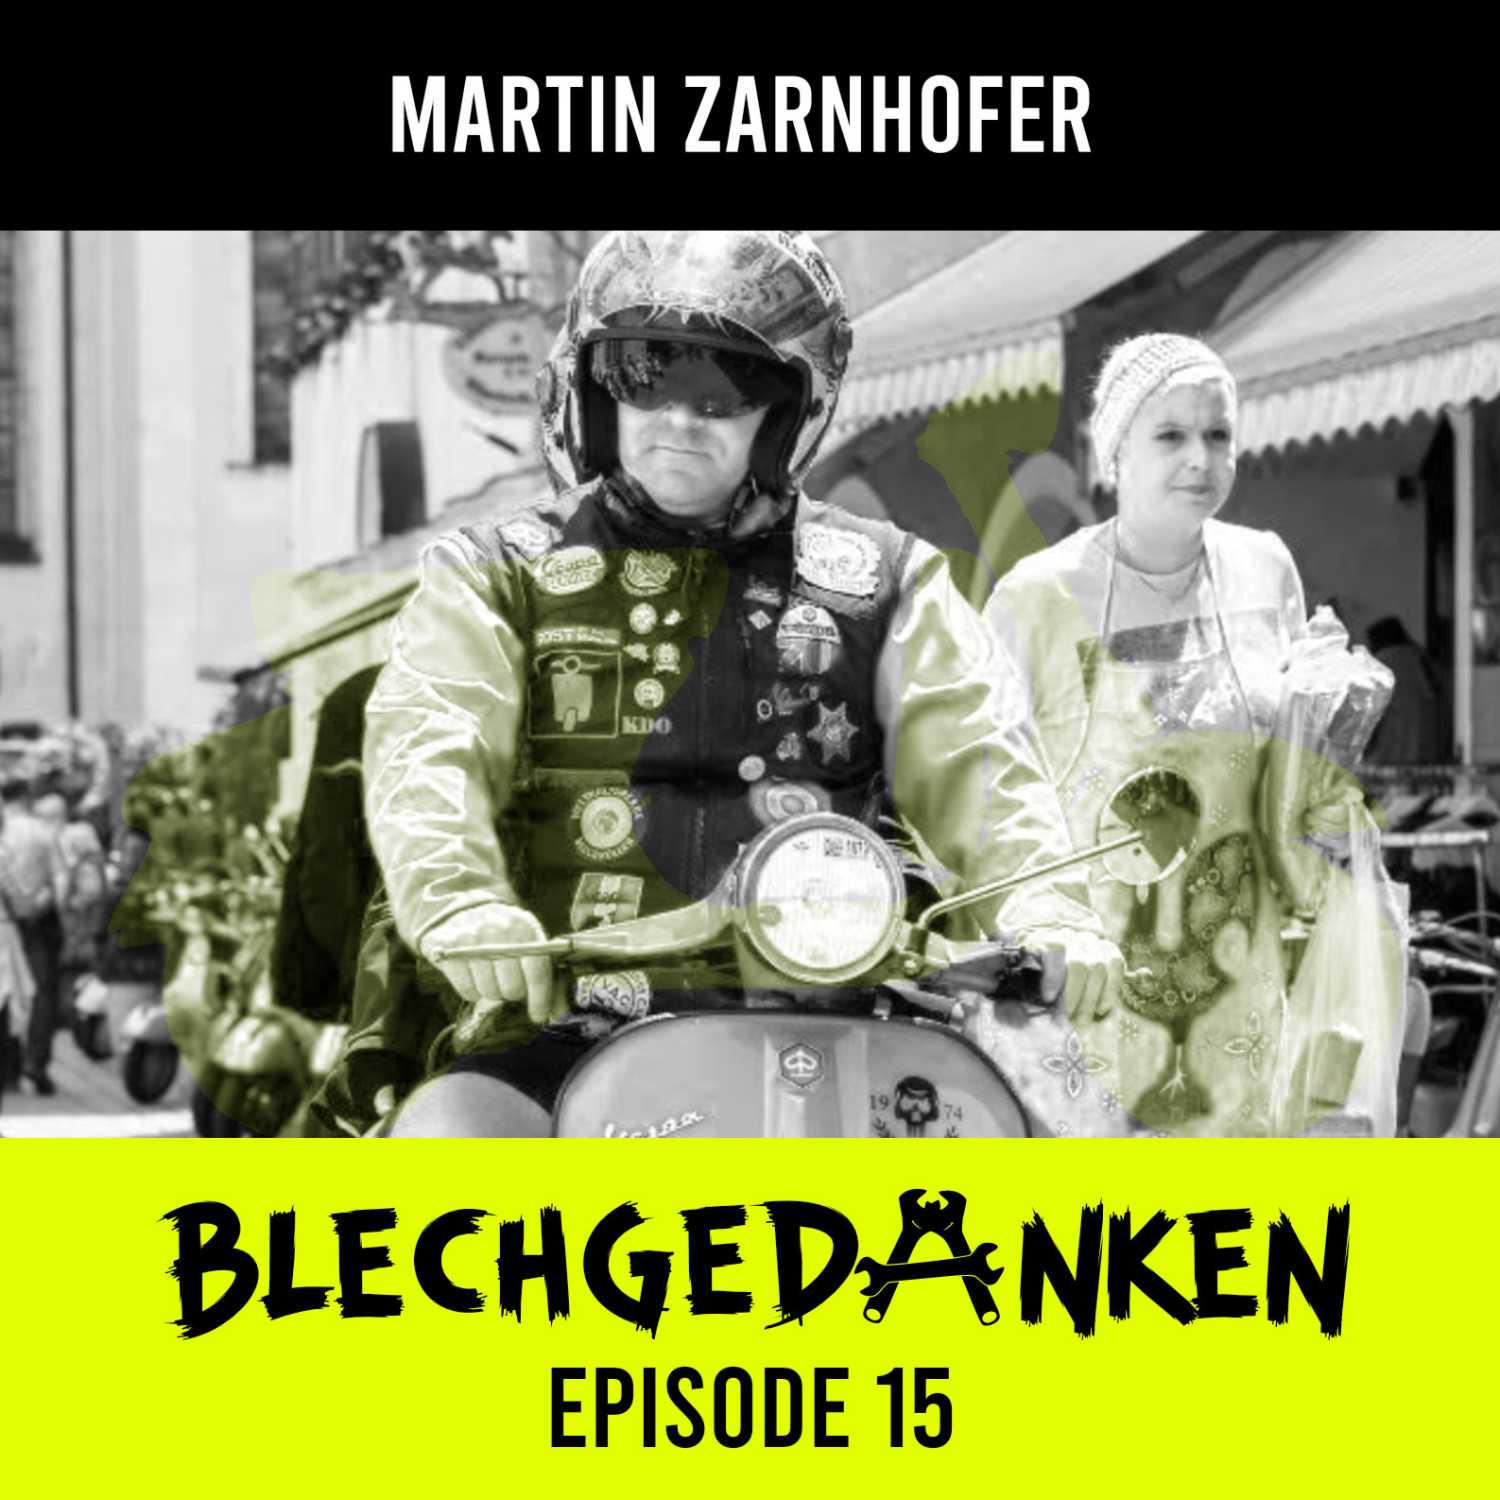 Blechgedanken Episode 15 – Martin Zarnhofer – Vespaliebe im Land der Paradeiser, des Heurigen und der wilden Kaiserin!